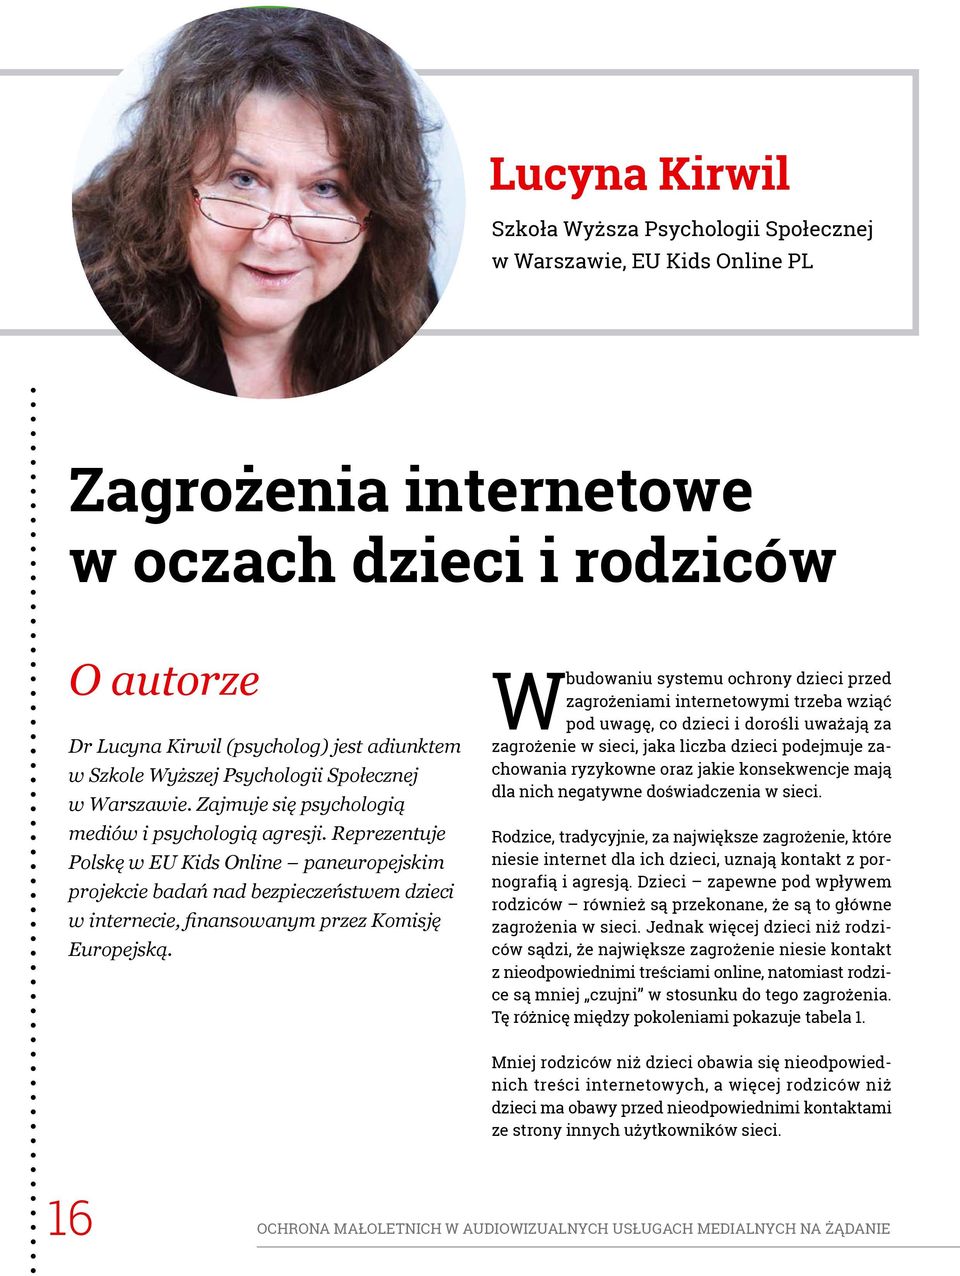 Reprezentuje Polskę w EU Kids Online paneuropejskim projekcie badań nad bezpieczeństwem dzieci w internecie, finansowanym przez Komisję Europejską.